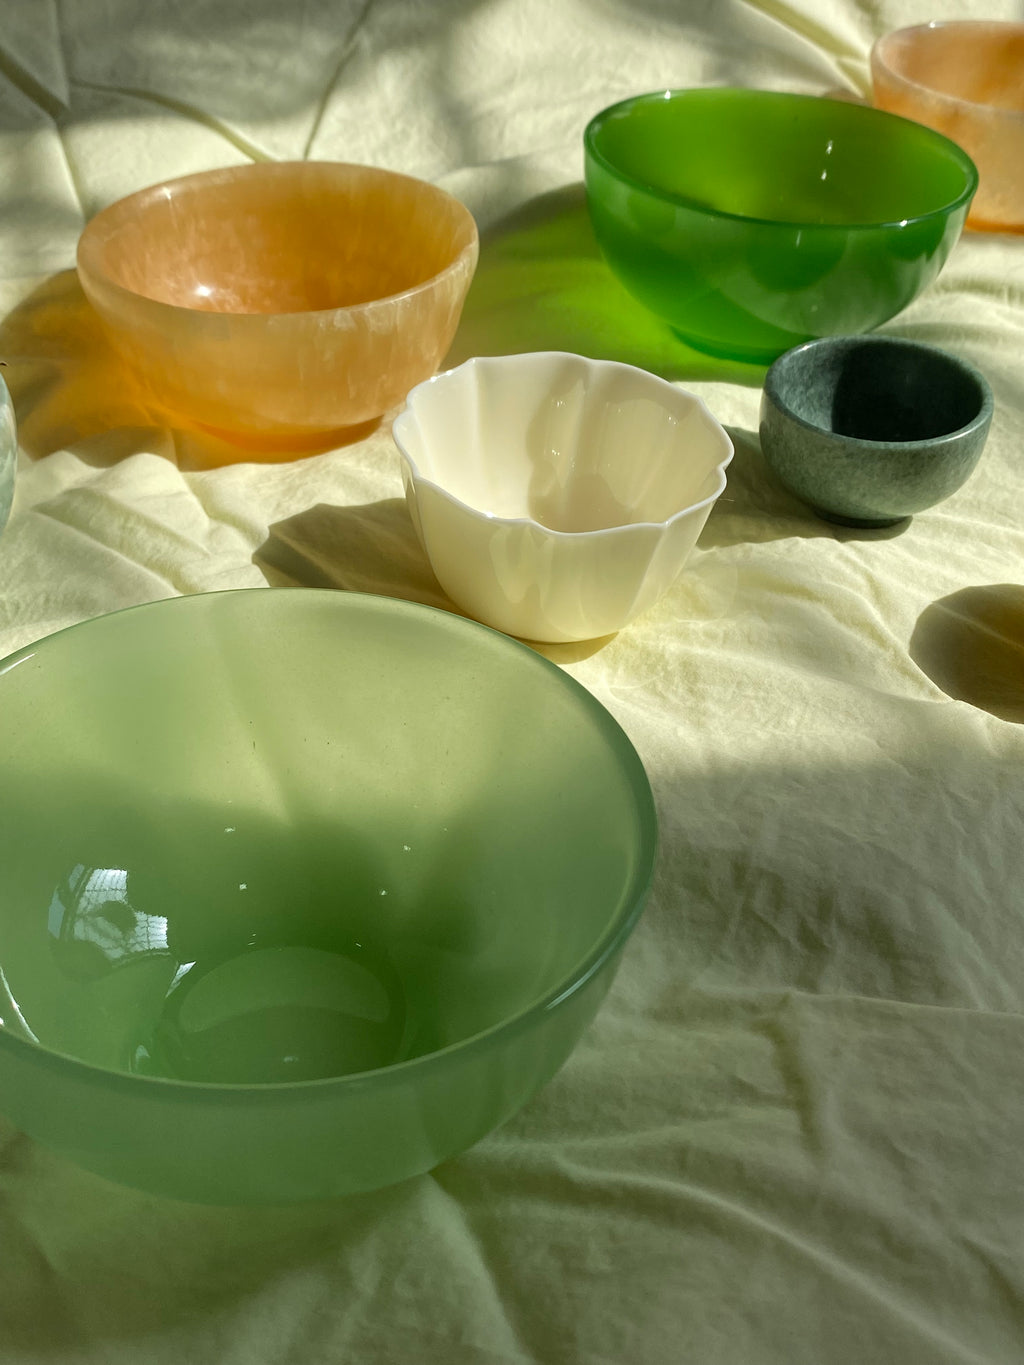 seree-jade-stone-bowl-in-light-green-ji